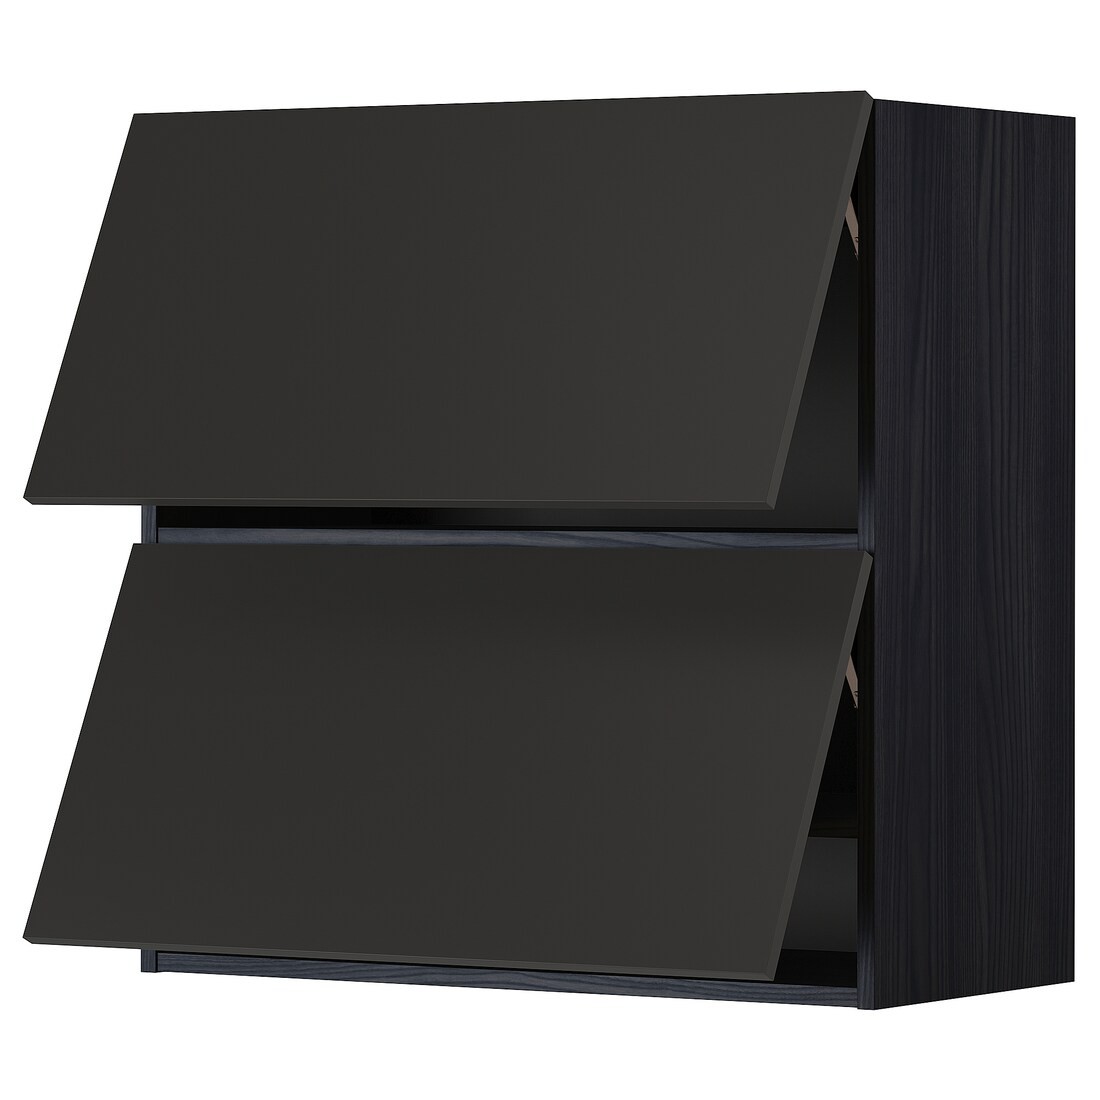 METOD МЕТОД Навесной горизонтальный шкаф / 2 двери, черный / Nickebo матовый антрацит, 80x80 см